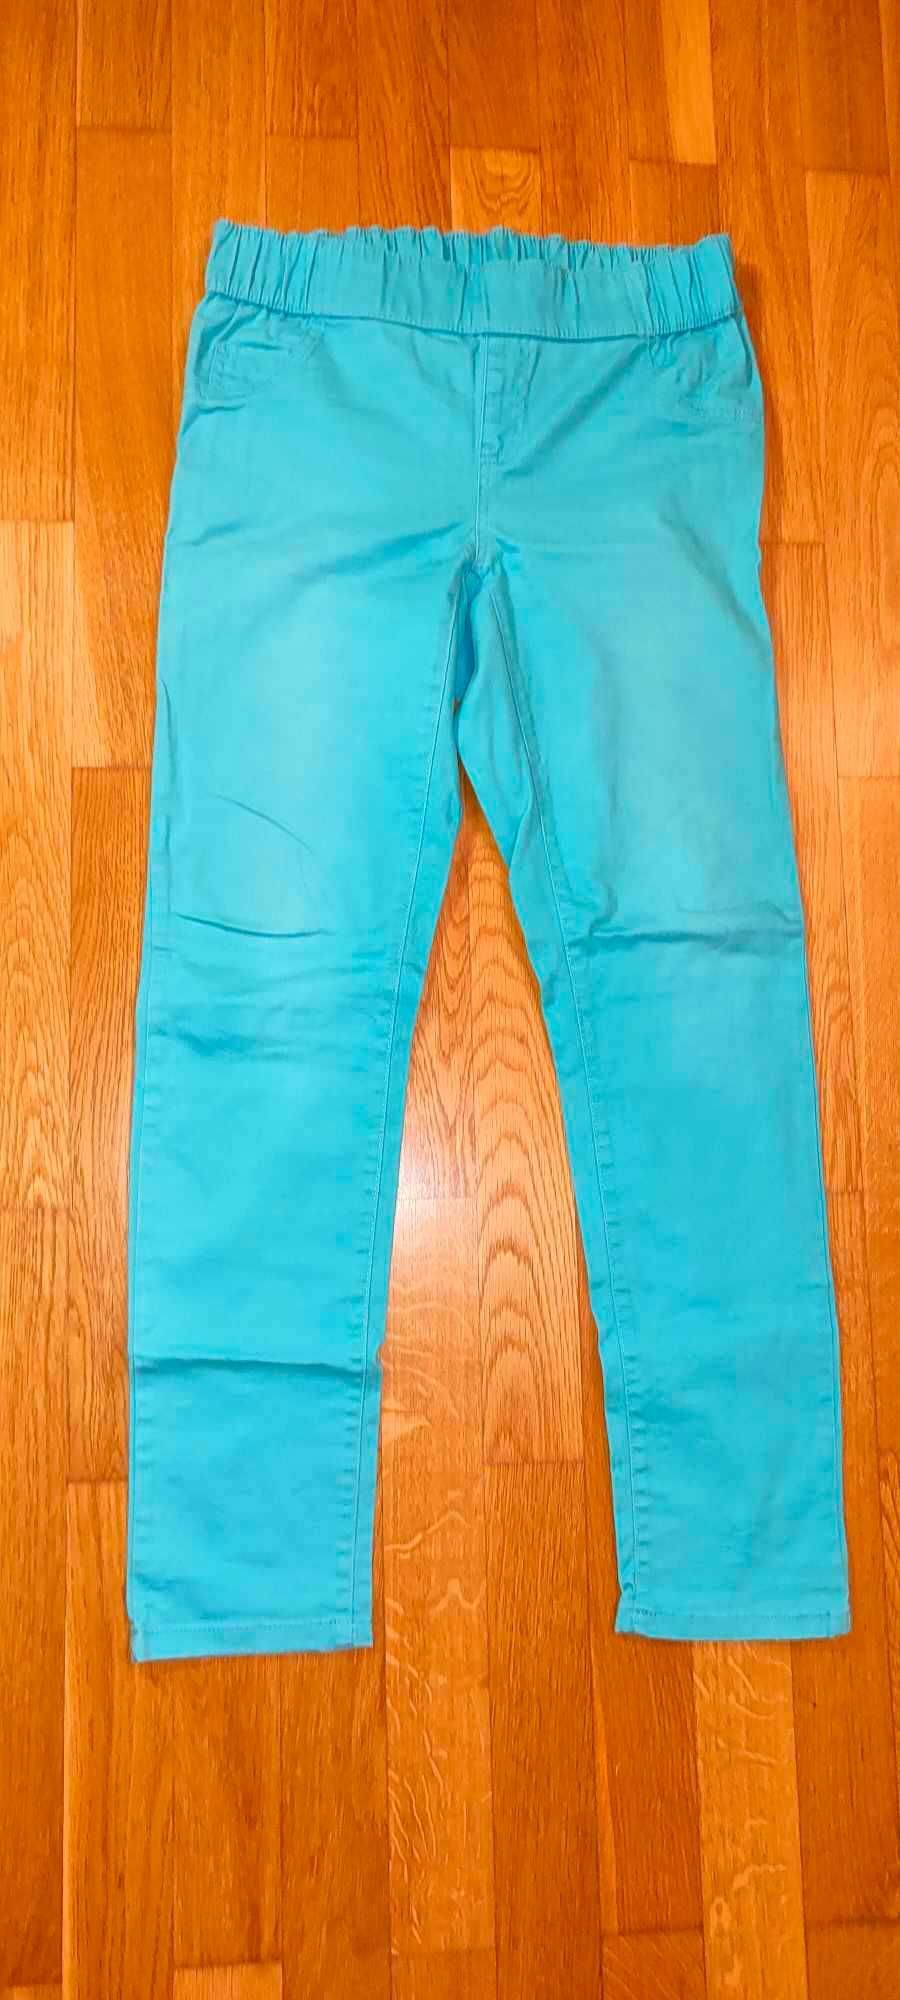 Długie turkusowe spodnie - jeans damskie